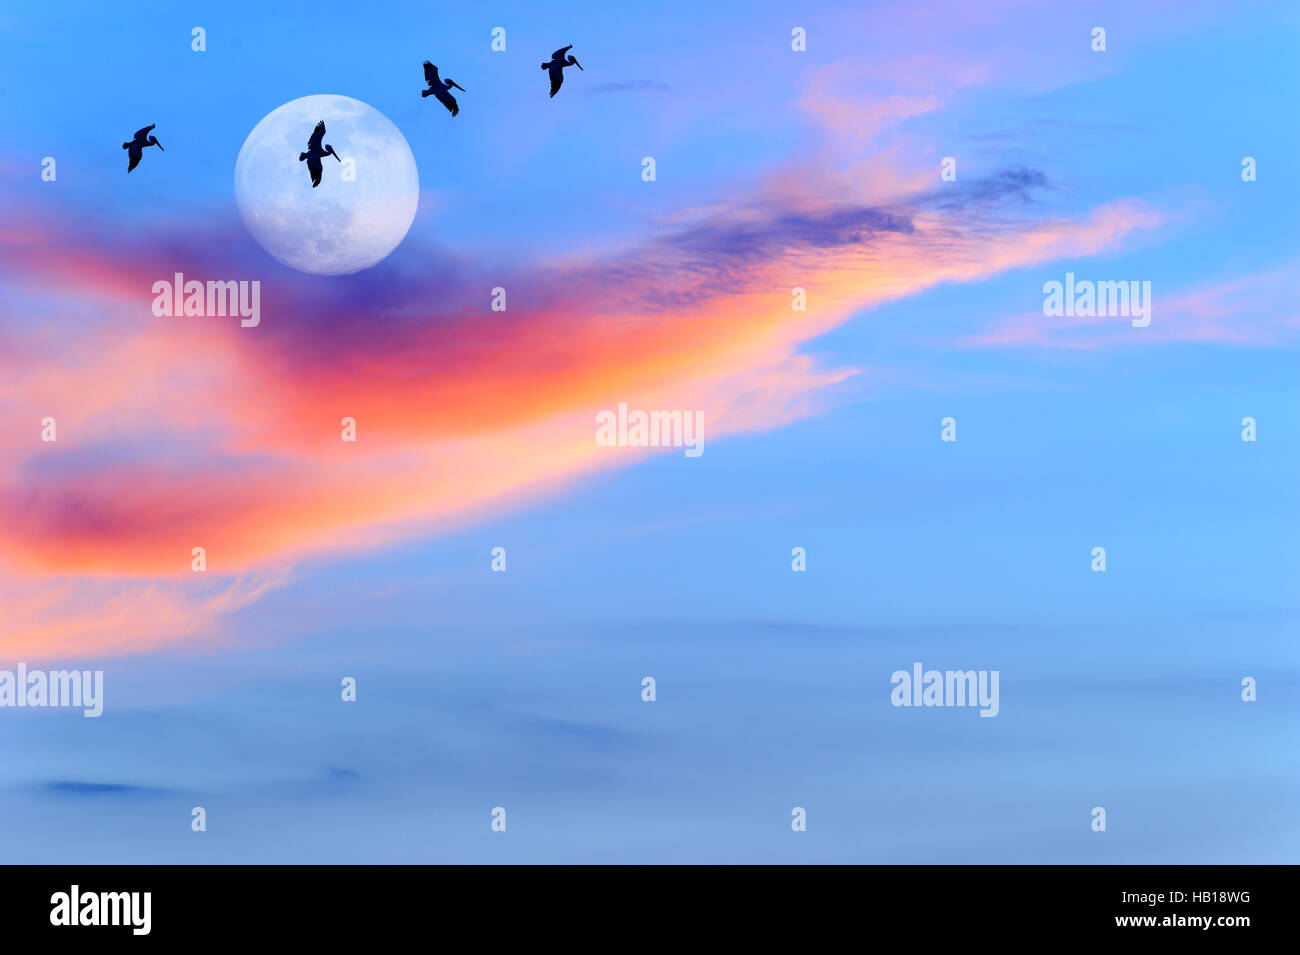 Vögel Silhouetten Sonnenuntergang Mond hat vier große Vögel, die fliegen durch das Licht des Mondes. Stockfoto